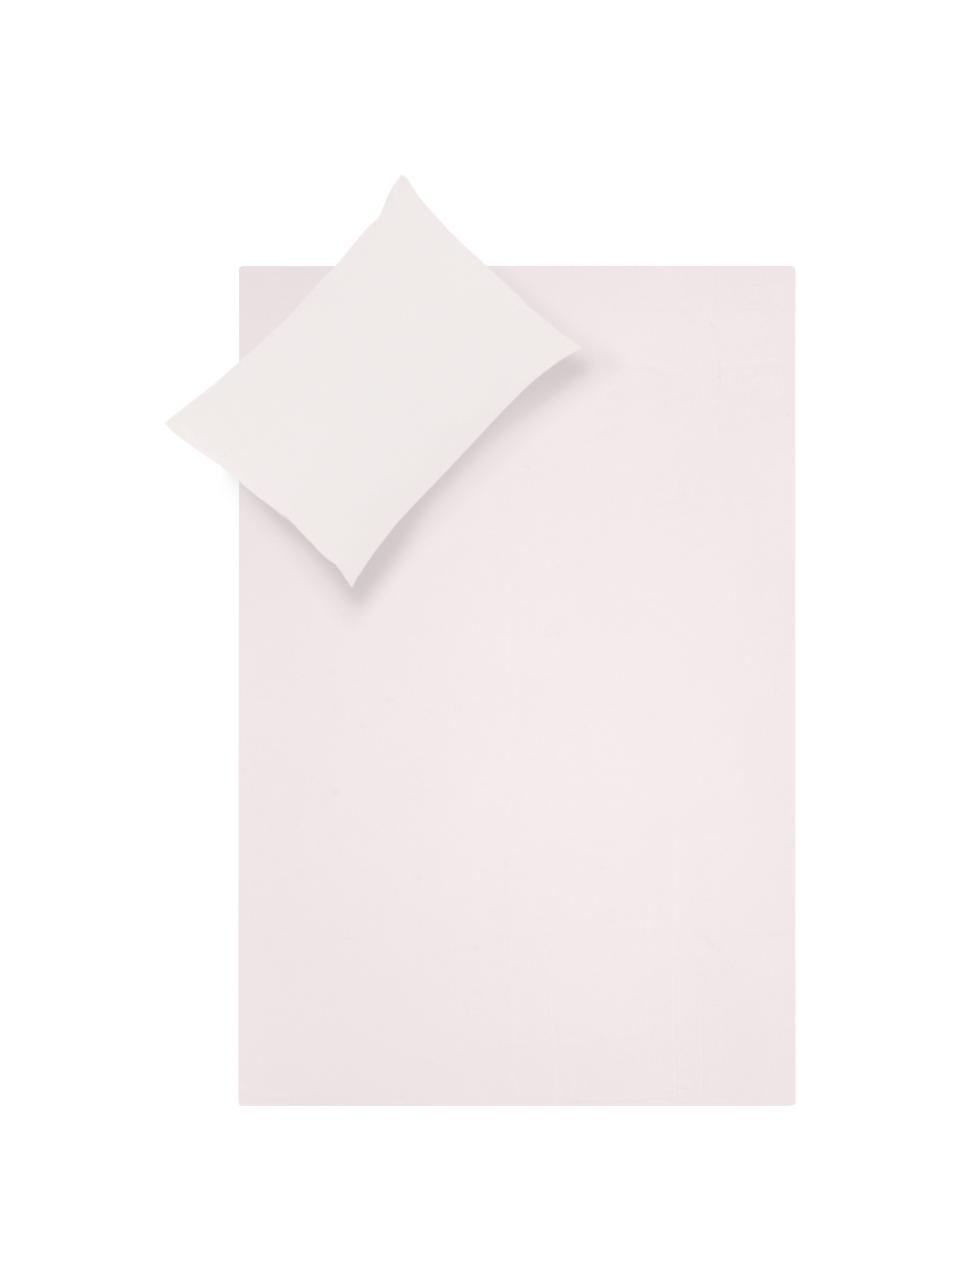 Biancheria da letto rosa in raso di cotone Comfort, Tessuto: raso Densità del filo 250, Rosa chiaro, 240 x 300 cm + 2 federe 50 x 80 cm